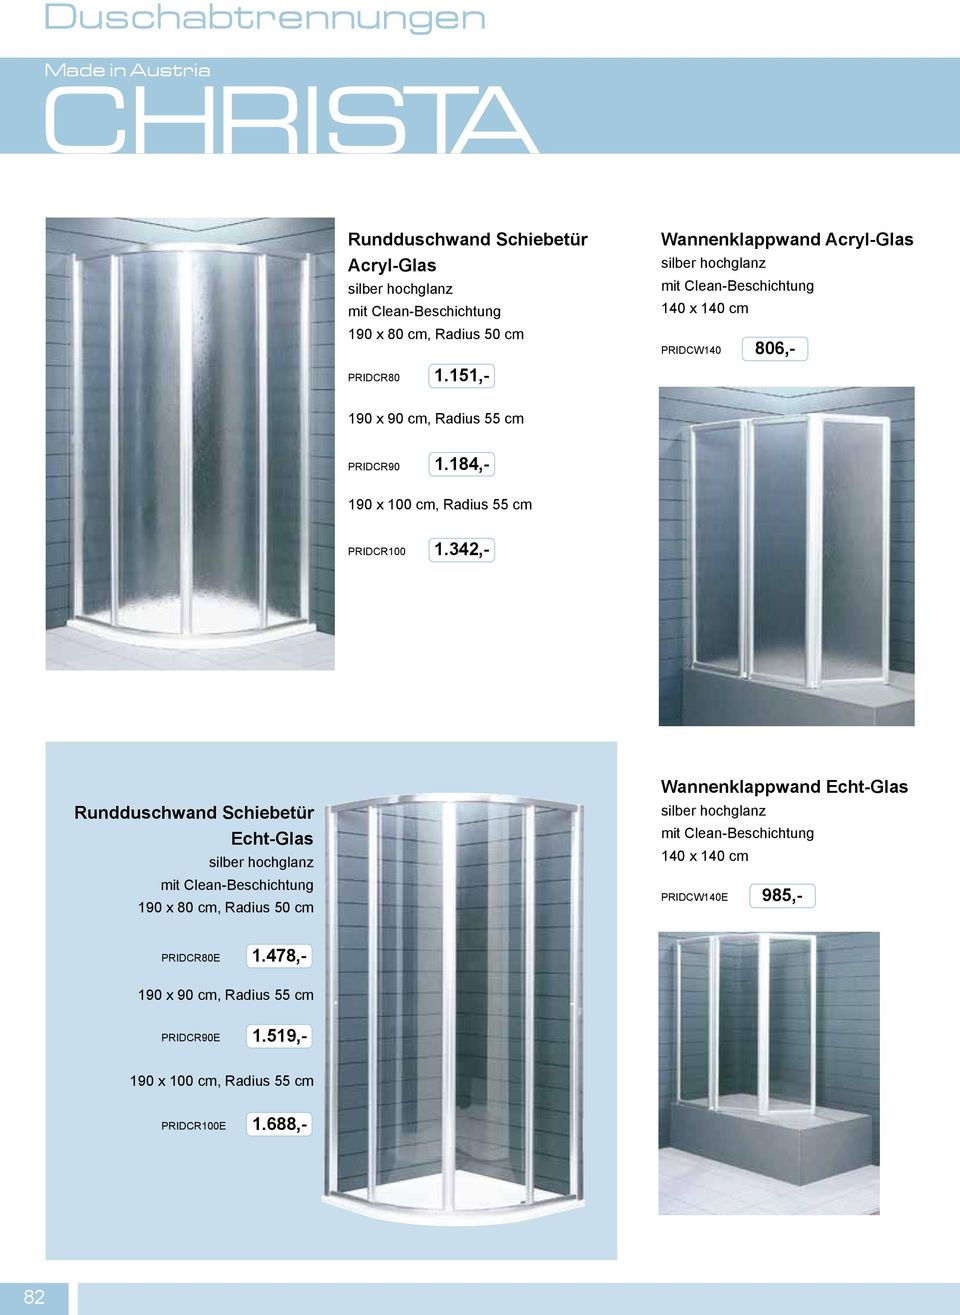 Rundduschwand Schiebetür Echt-Glas 190 x 80 cm, Radius 50 cm Wannenklappwand Echt-Glas 140 x 140 cm PRIDCW140E PRIDCR80E